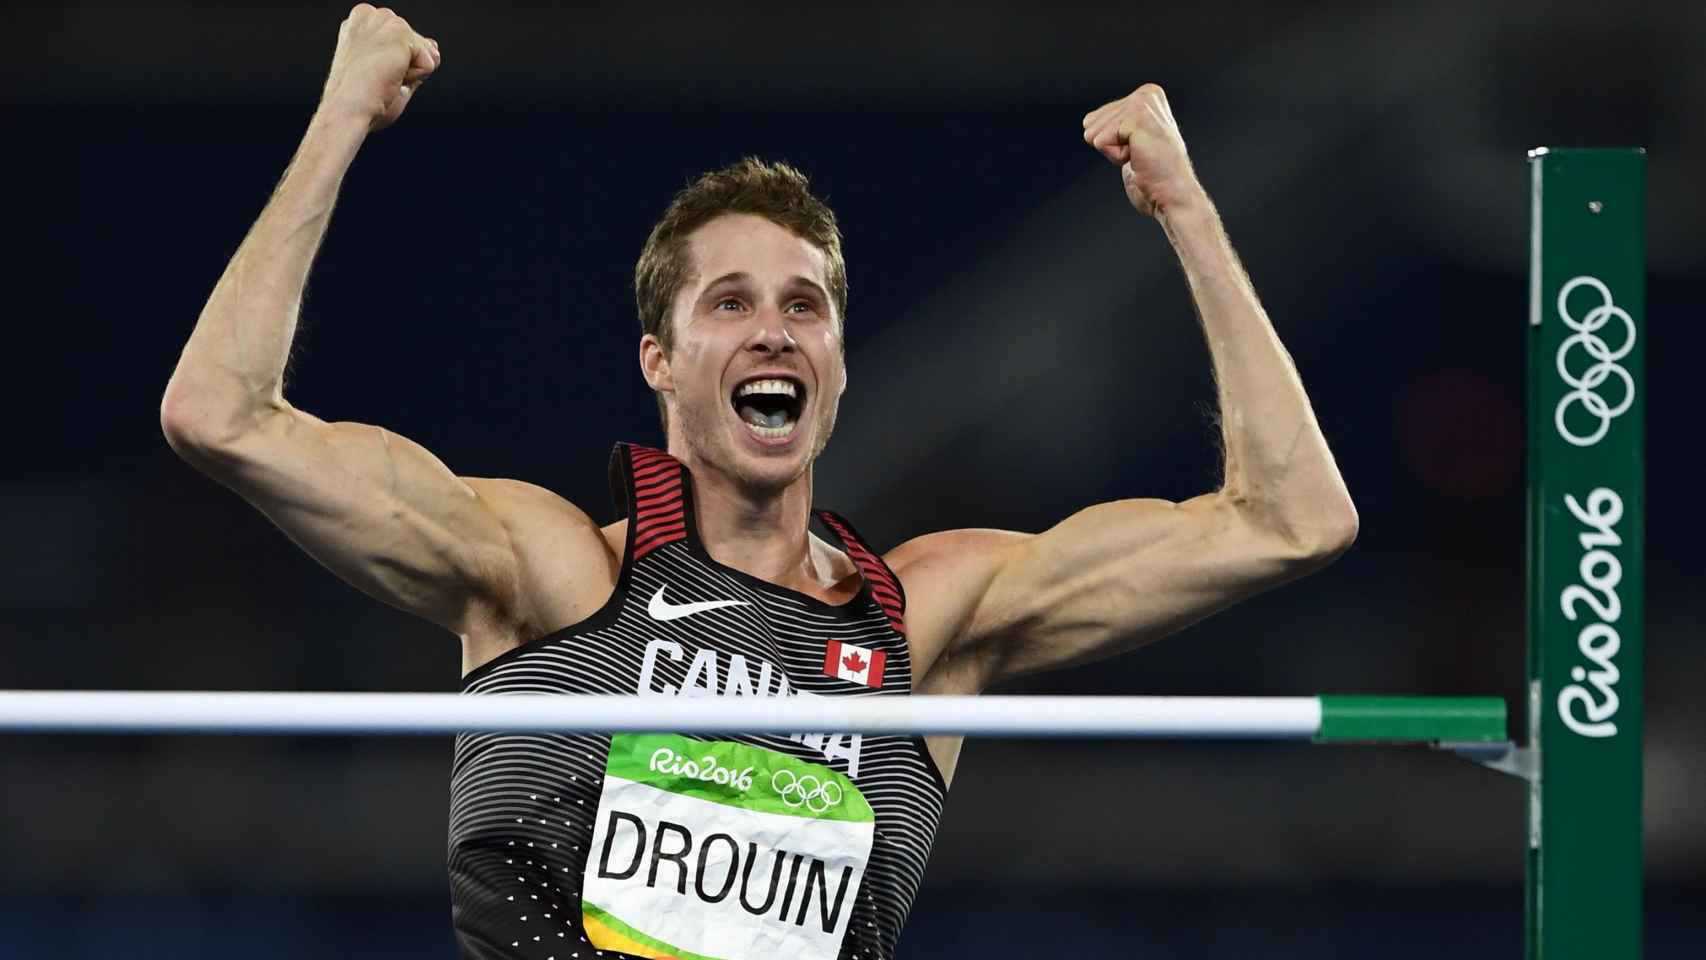 Drouin celebra el salto en 2.38 metros.